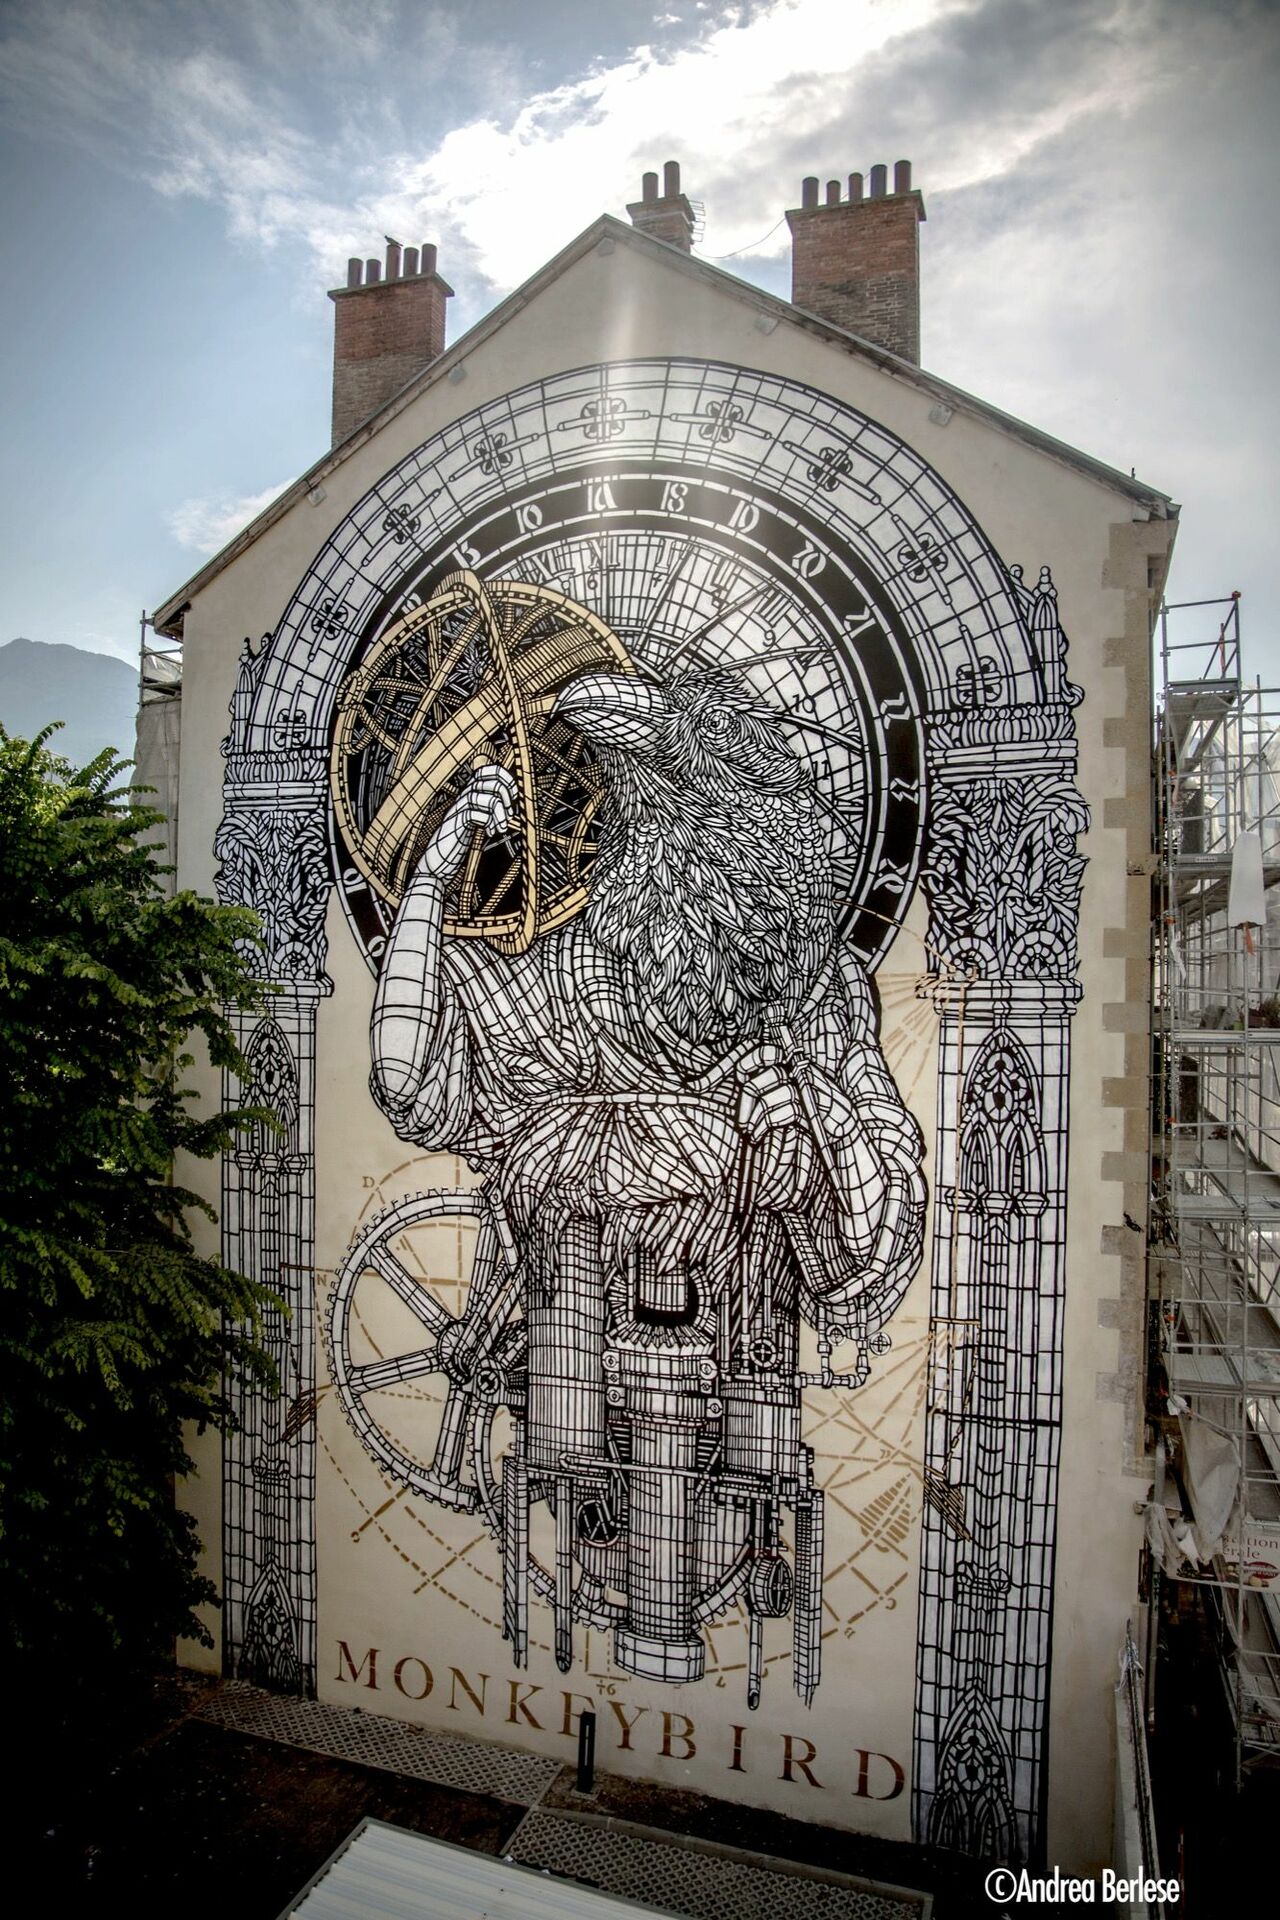 Monkeybird in Grenoble, France#streetart #mural #graffiti #art https://t.co/y1f7emqL7l